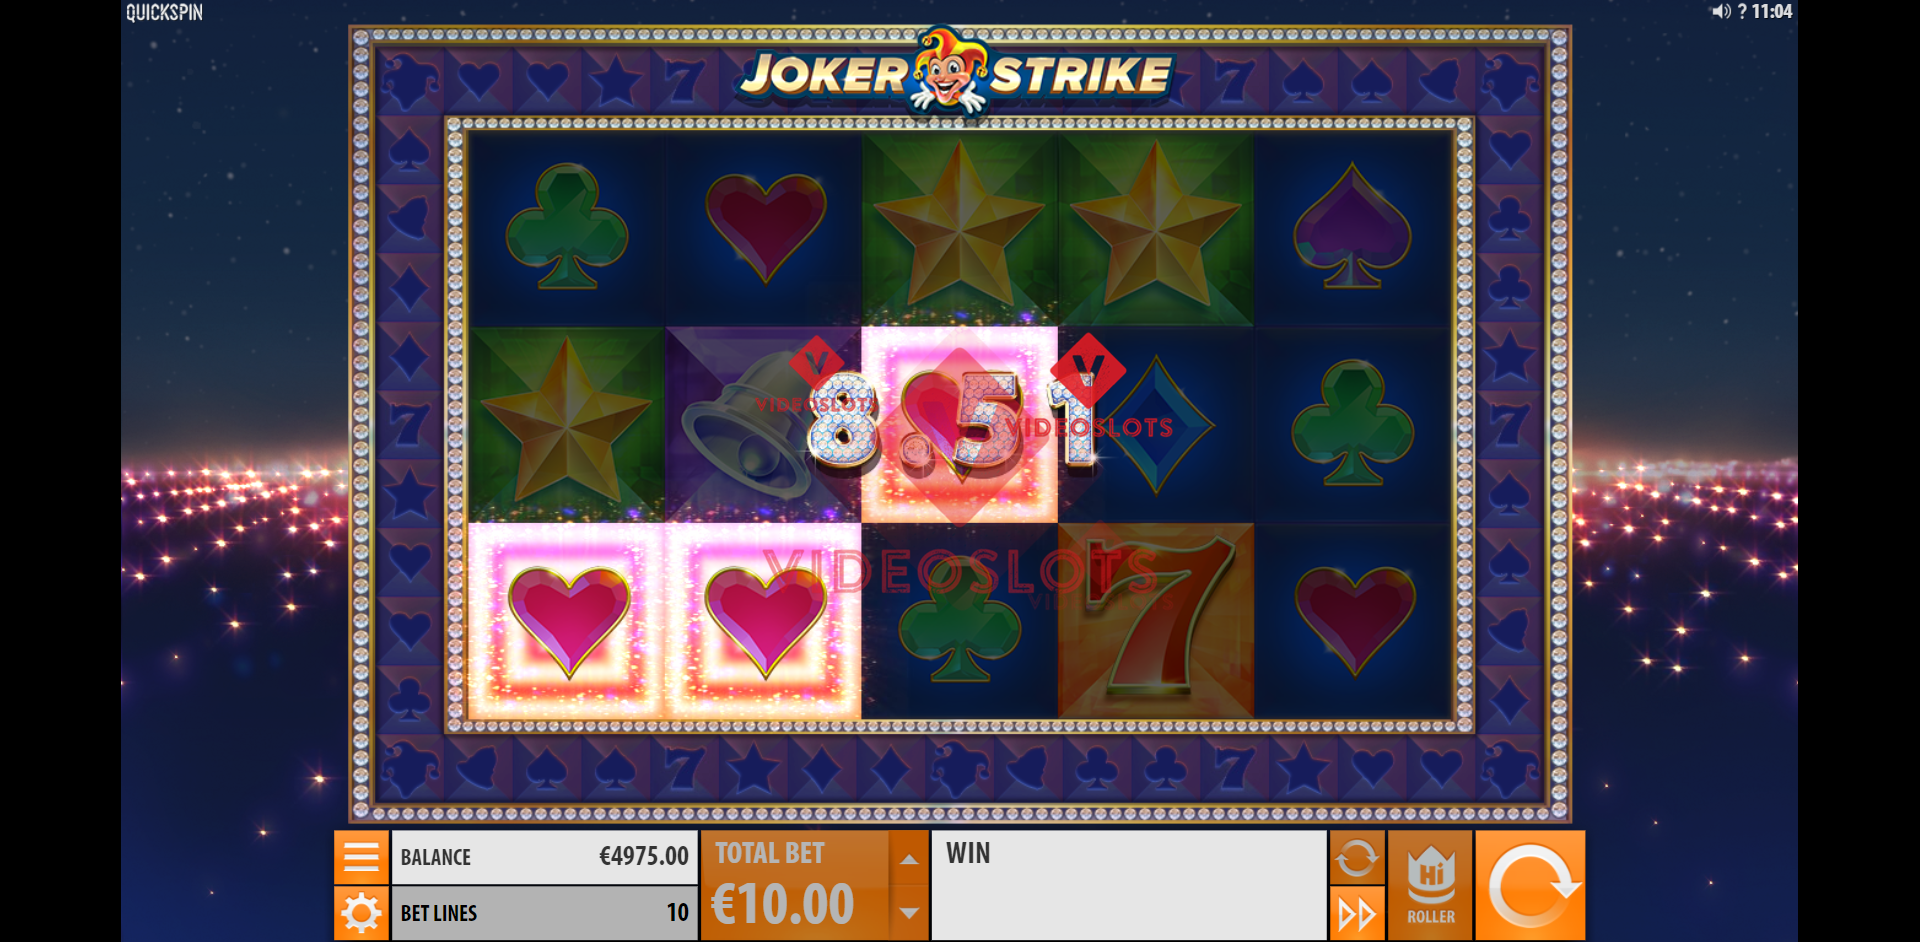 Base Game for Joker Strike slot from Quickspin